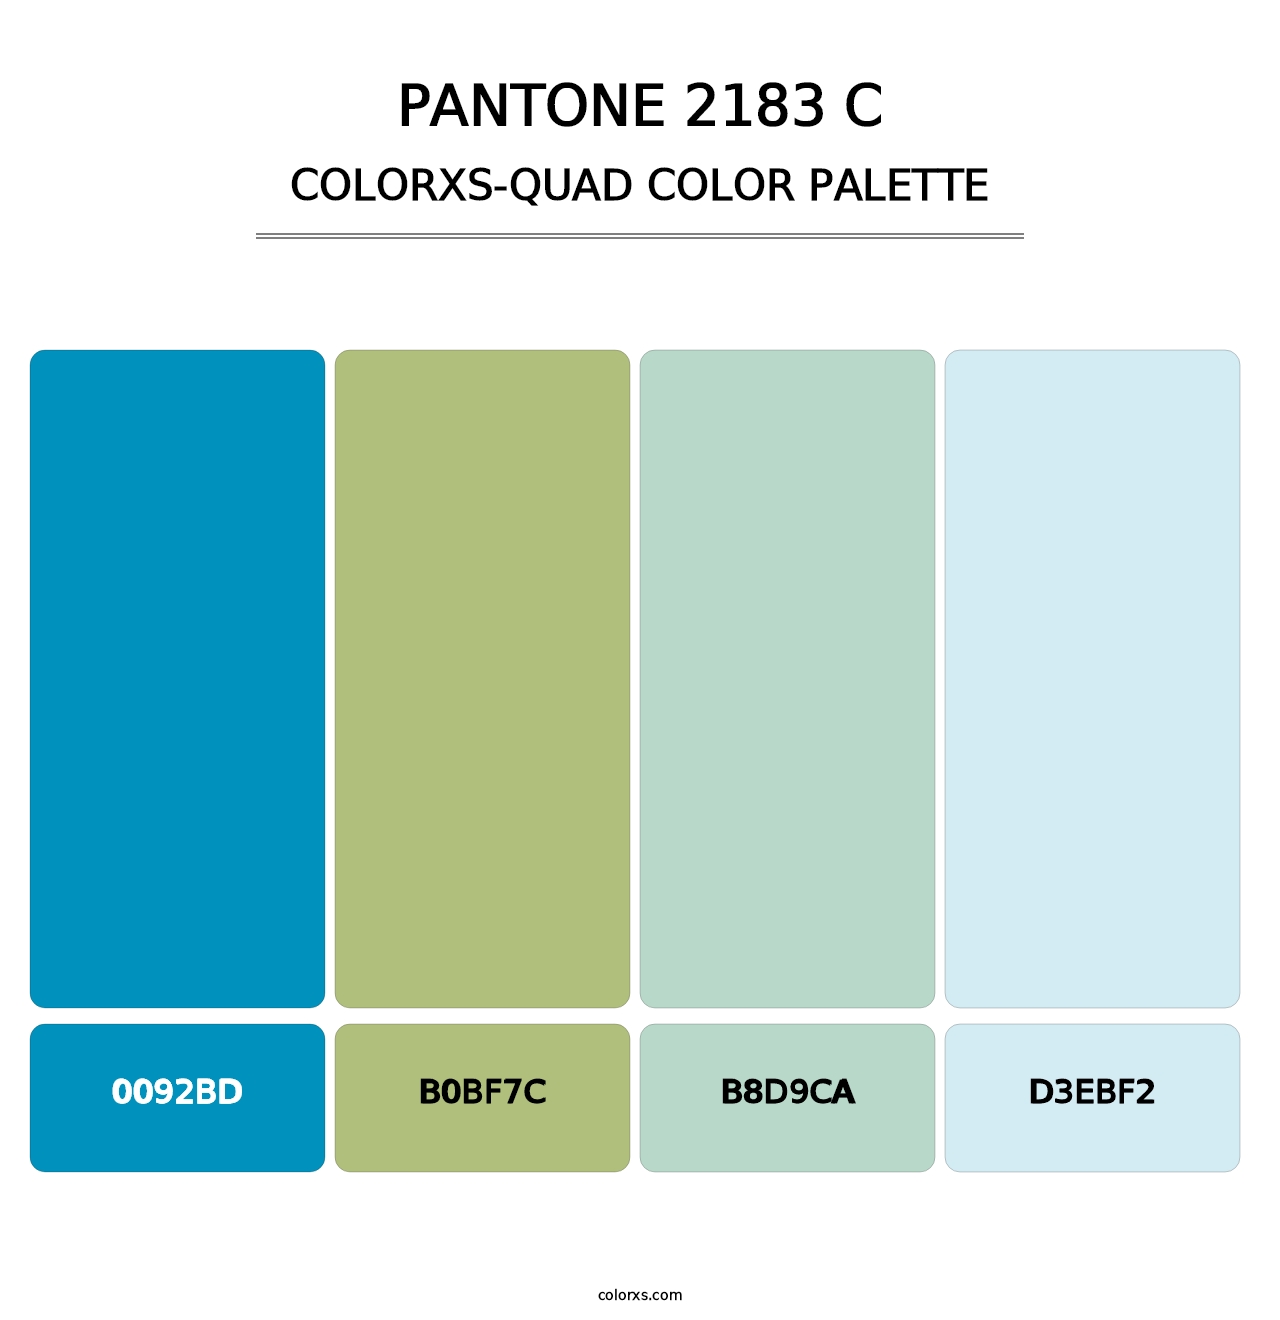 PANTONE 2183 C - Colorxs Quad Palette